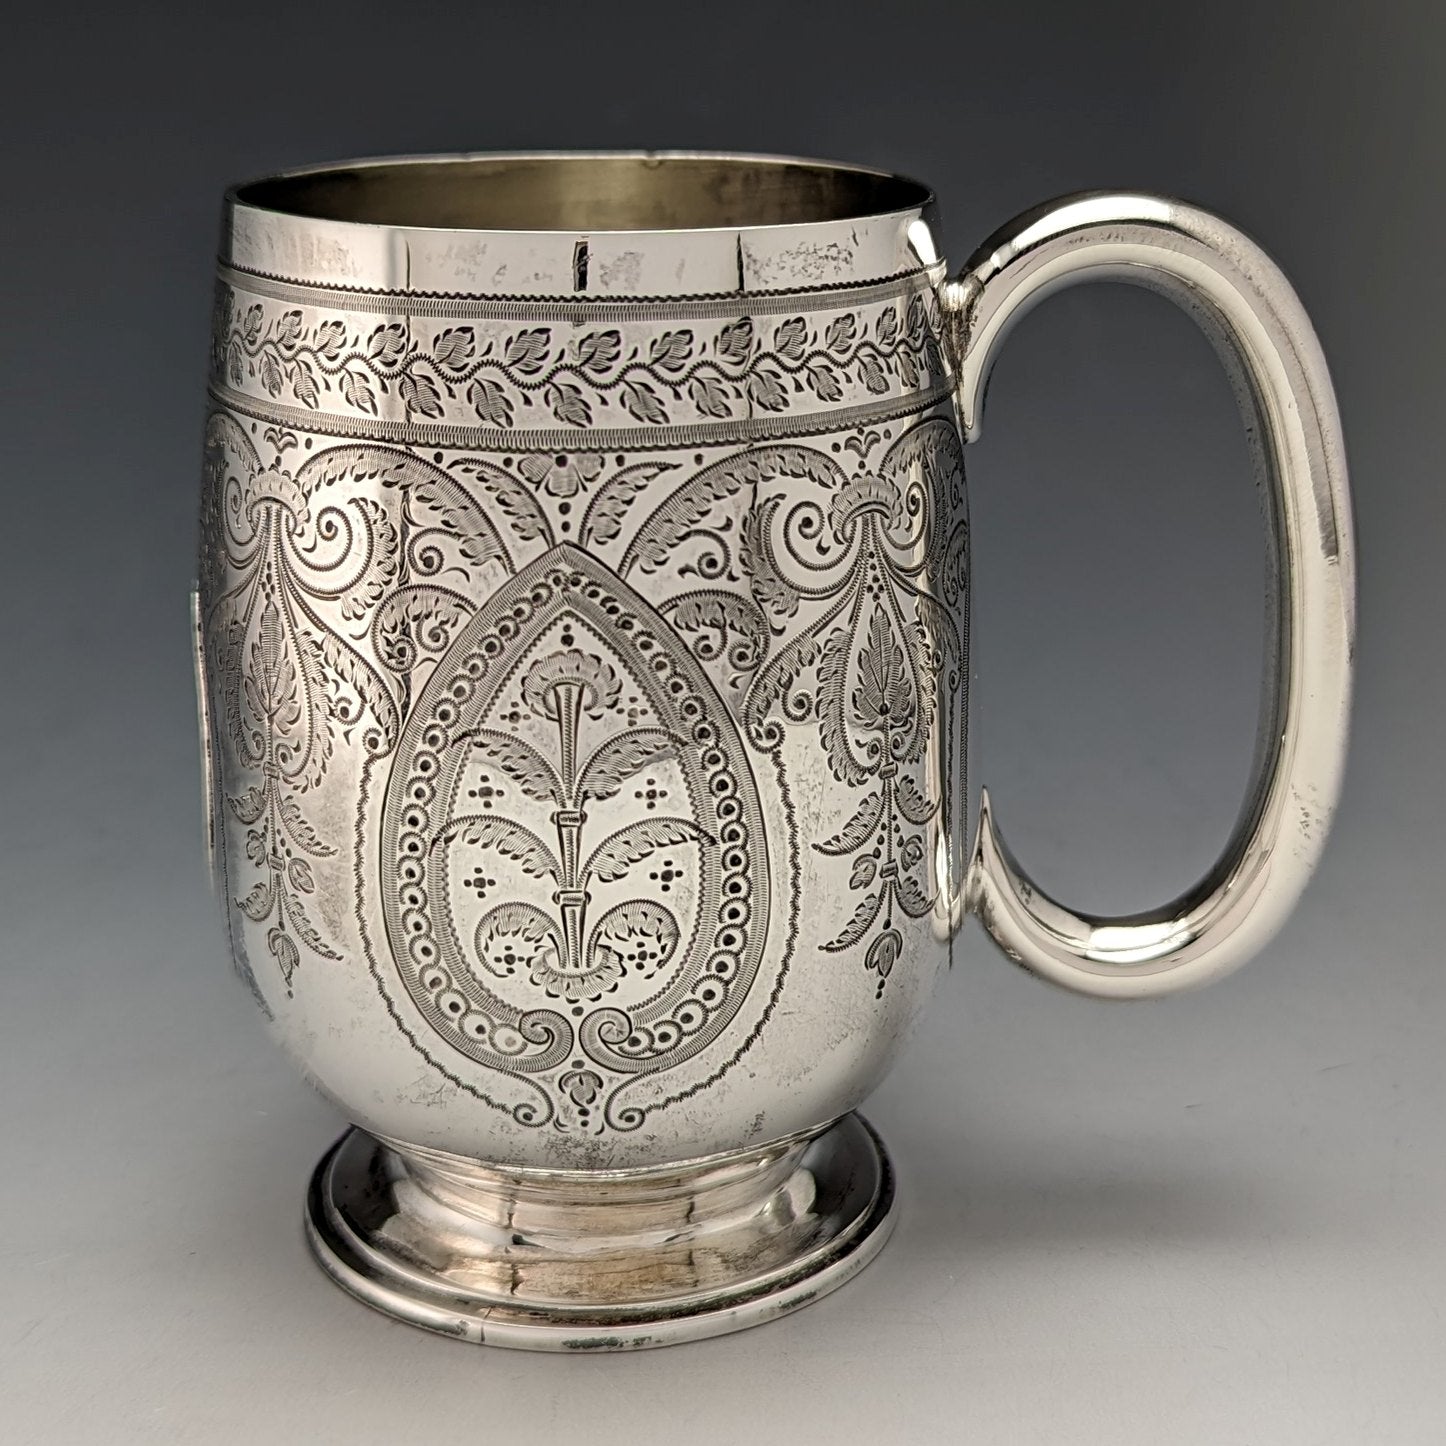 目立った傷や汚れのない美品機能1902年 英国アンティーク 純銀製マグカップ 70g Levesley Brothers